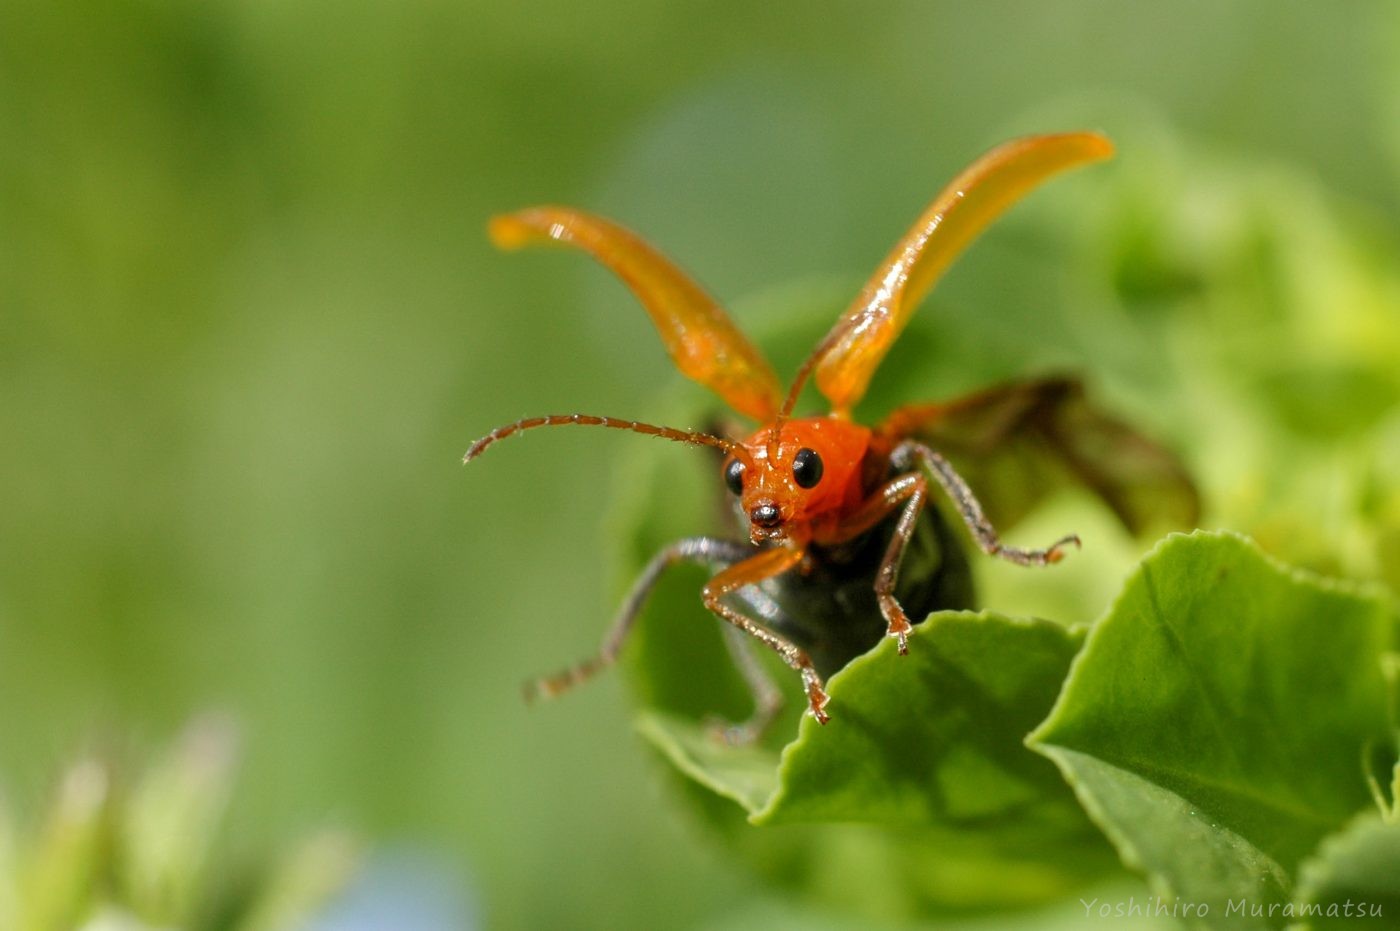 ウリハムシの特徴やトレンチ行動とは 虫の写真と生態なら昆虫写真図鑑 ムシミル